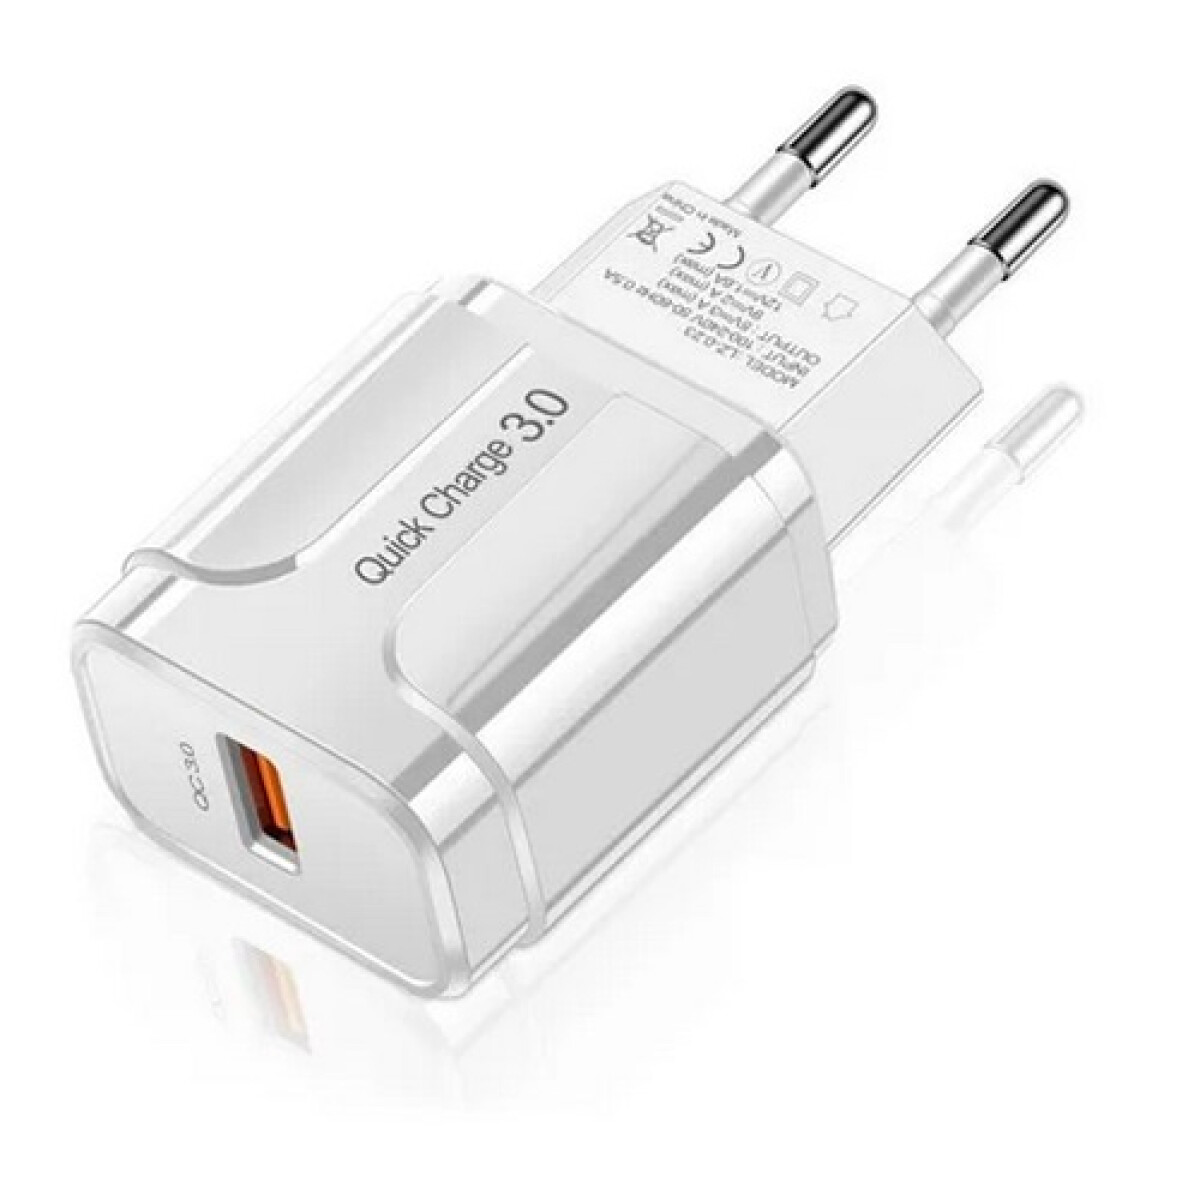 Cargador USB 3A carga rápida con chip Qualcomm 